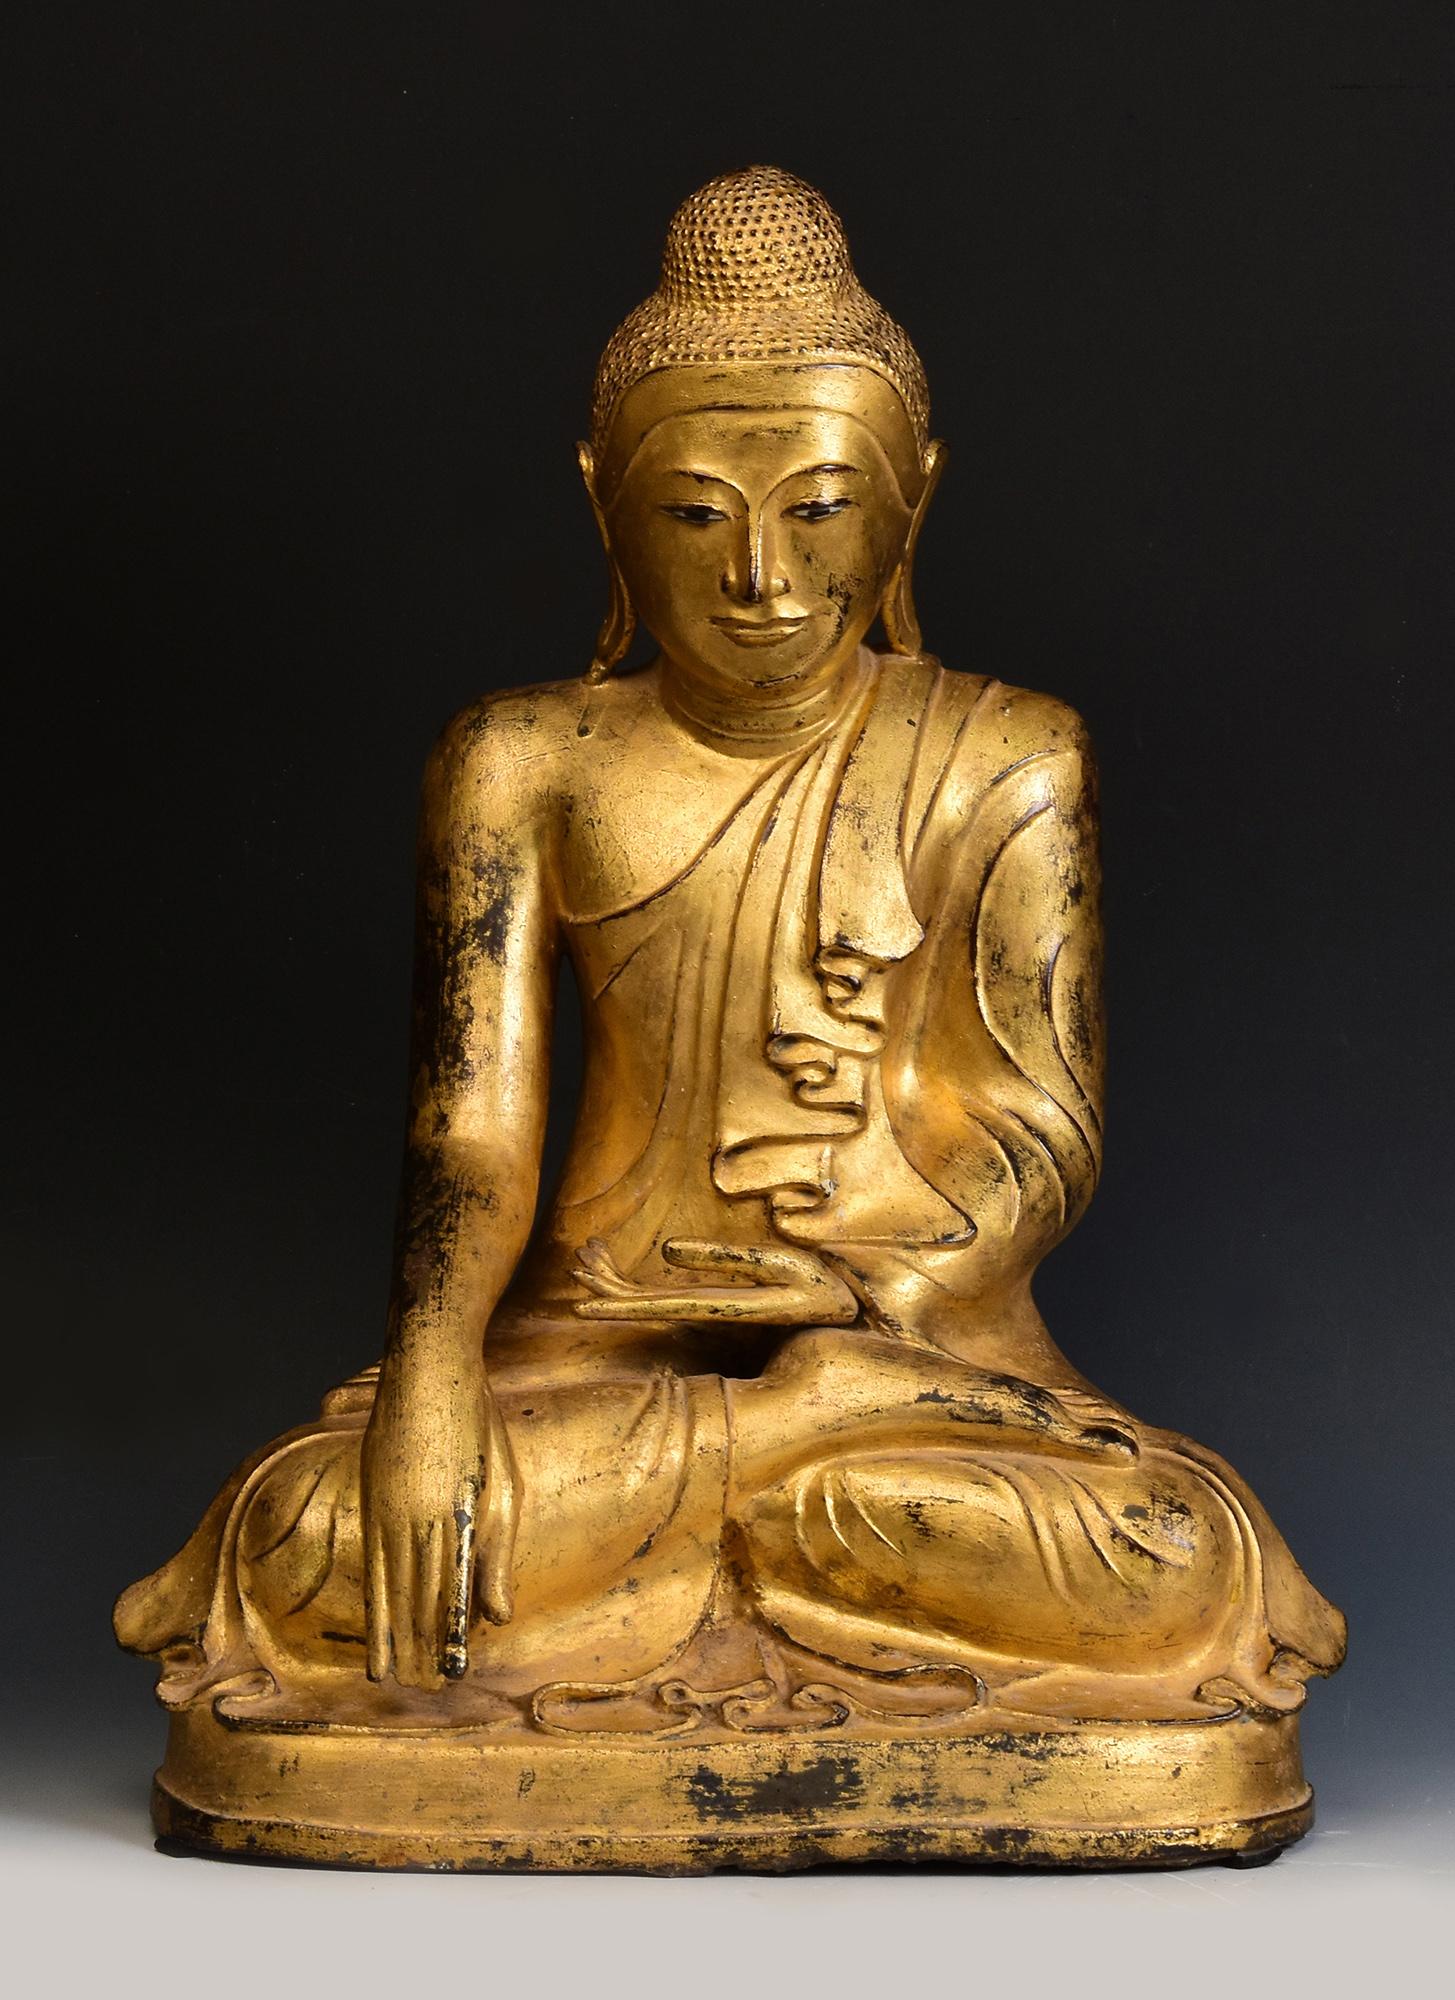 Buddha aus burmesischer Bronze, sitzend in der Mara-Vijaya-Haltung (die Erde zum Zeugnis rufend), auf einem Sockel, mit vergoldetem Gold.

Alter: Birma, Mandalay-Periode, 19. Jahrhundert
Größe: Höhe 55 C.M. / Breite 41 C.M. / Tiefe 28 C.M.
Zustand: